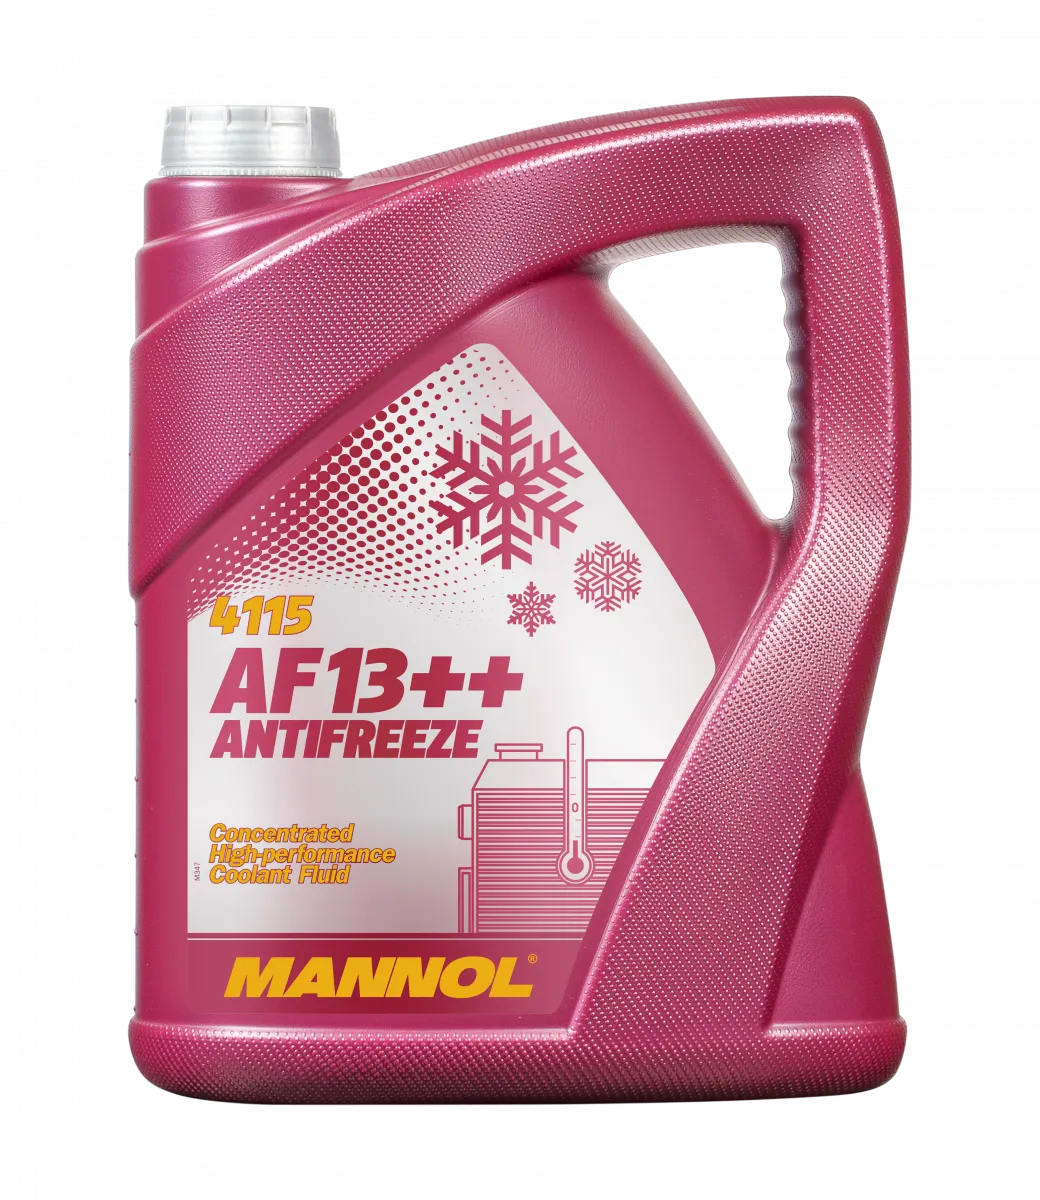 mannol antifreeze af13++#1